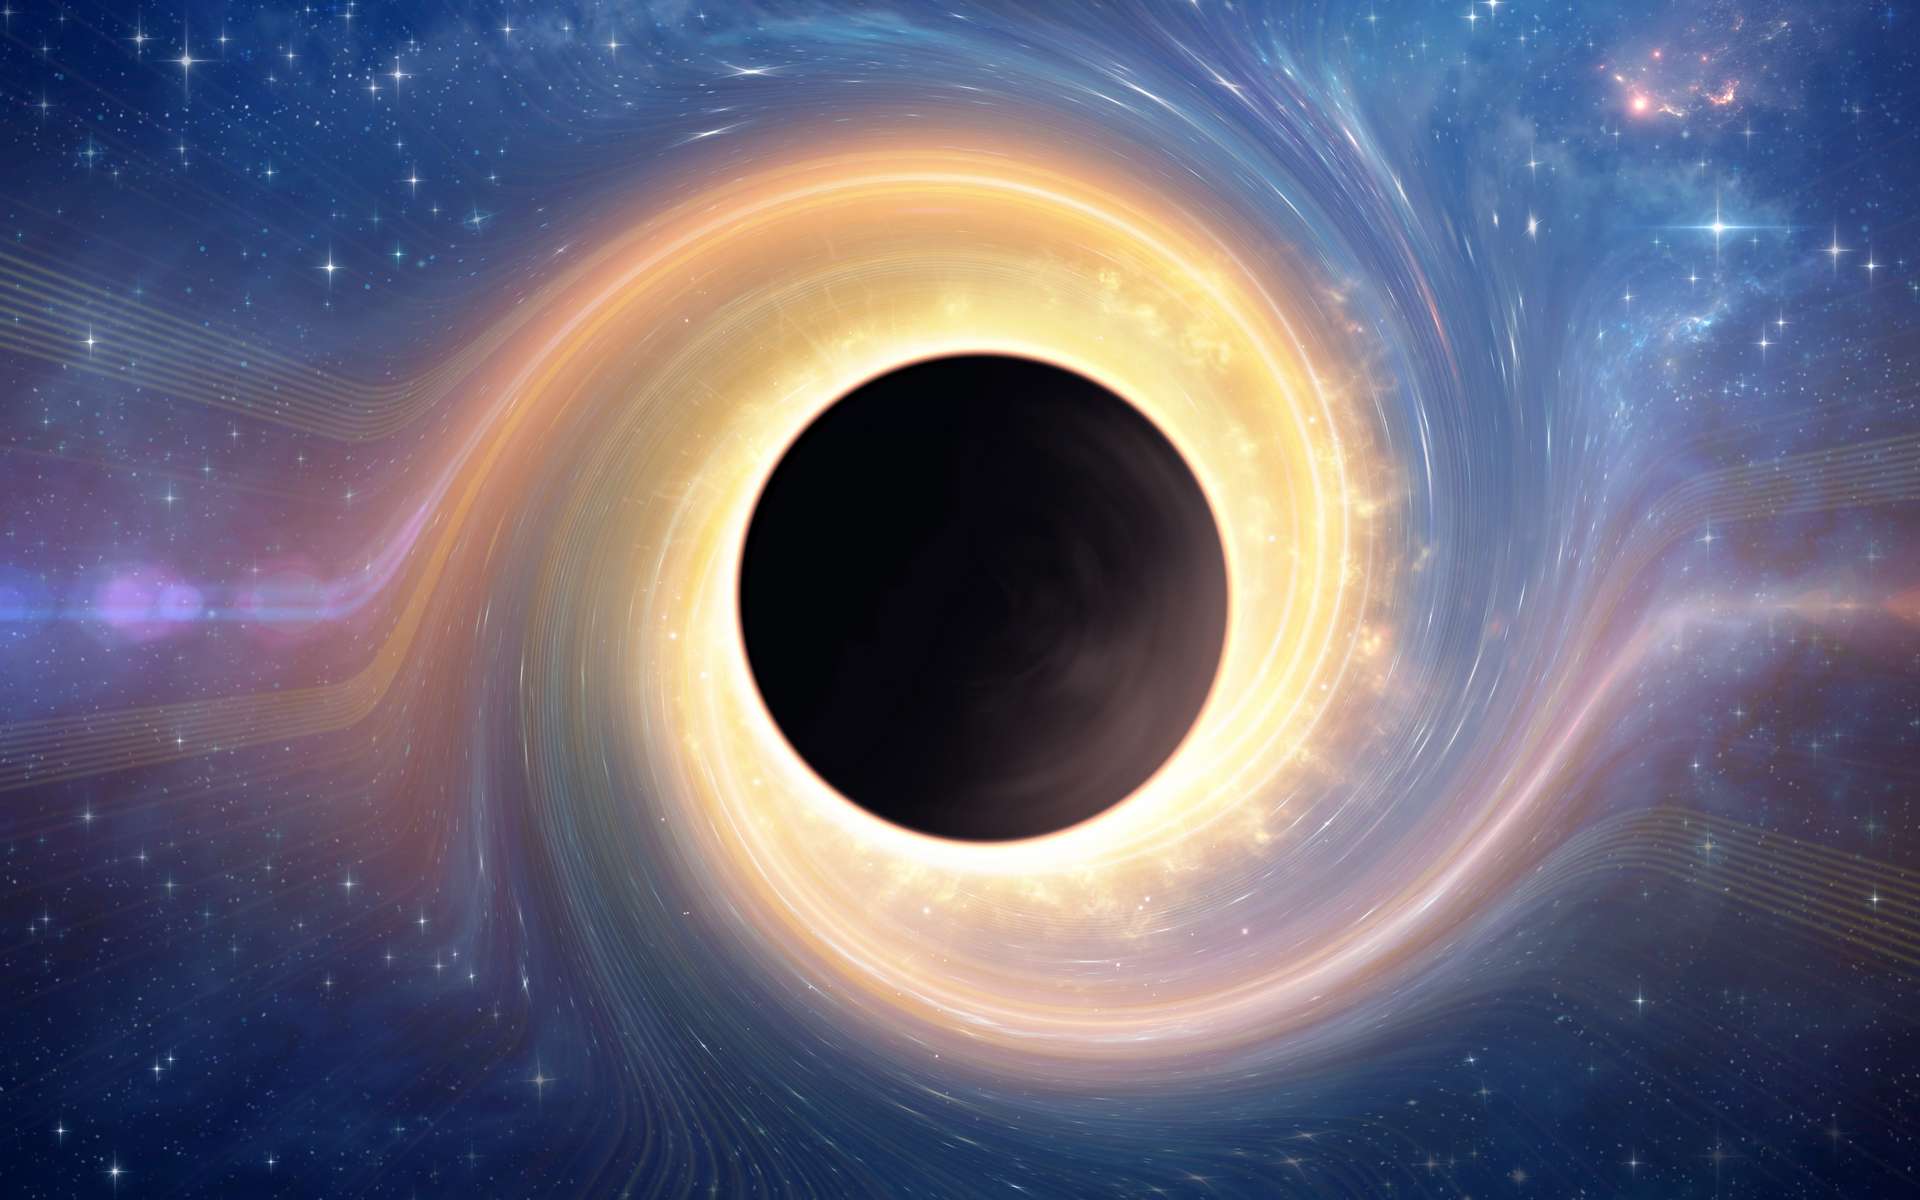 Ce trou noir errant avec une trainée d'étoiles est en réalité une galaxie plate !